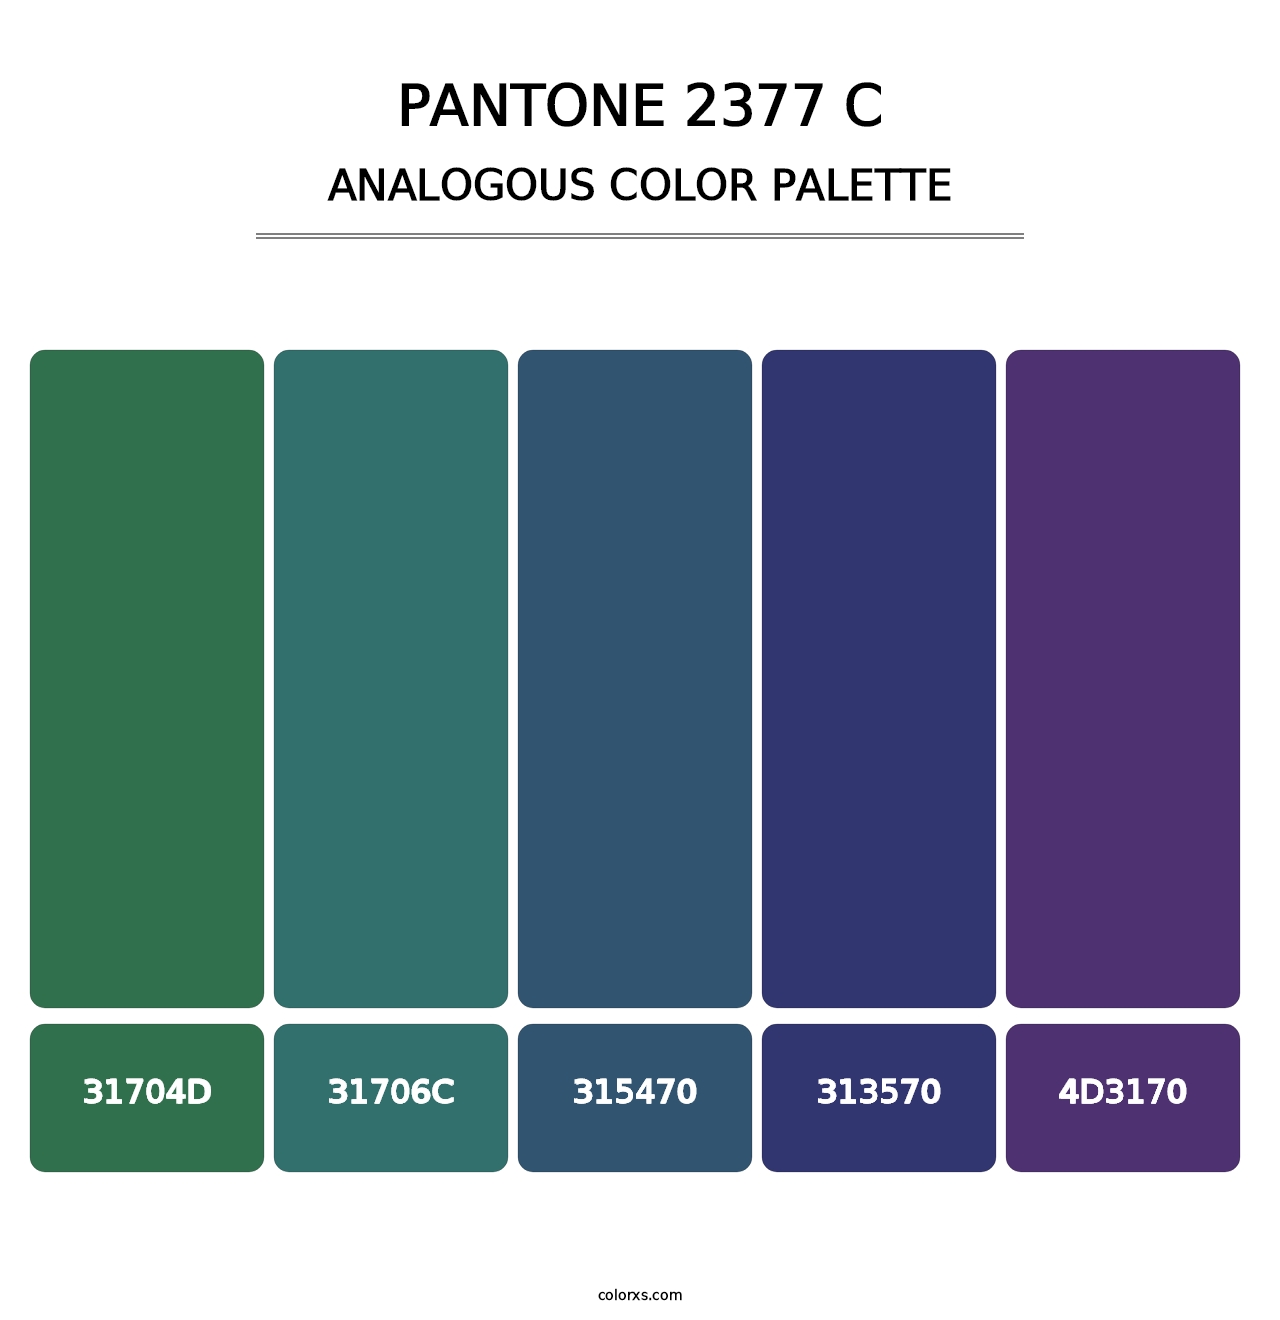 PANTONE 2377 C - Analogous Color Palette